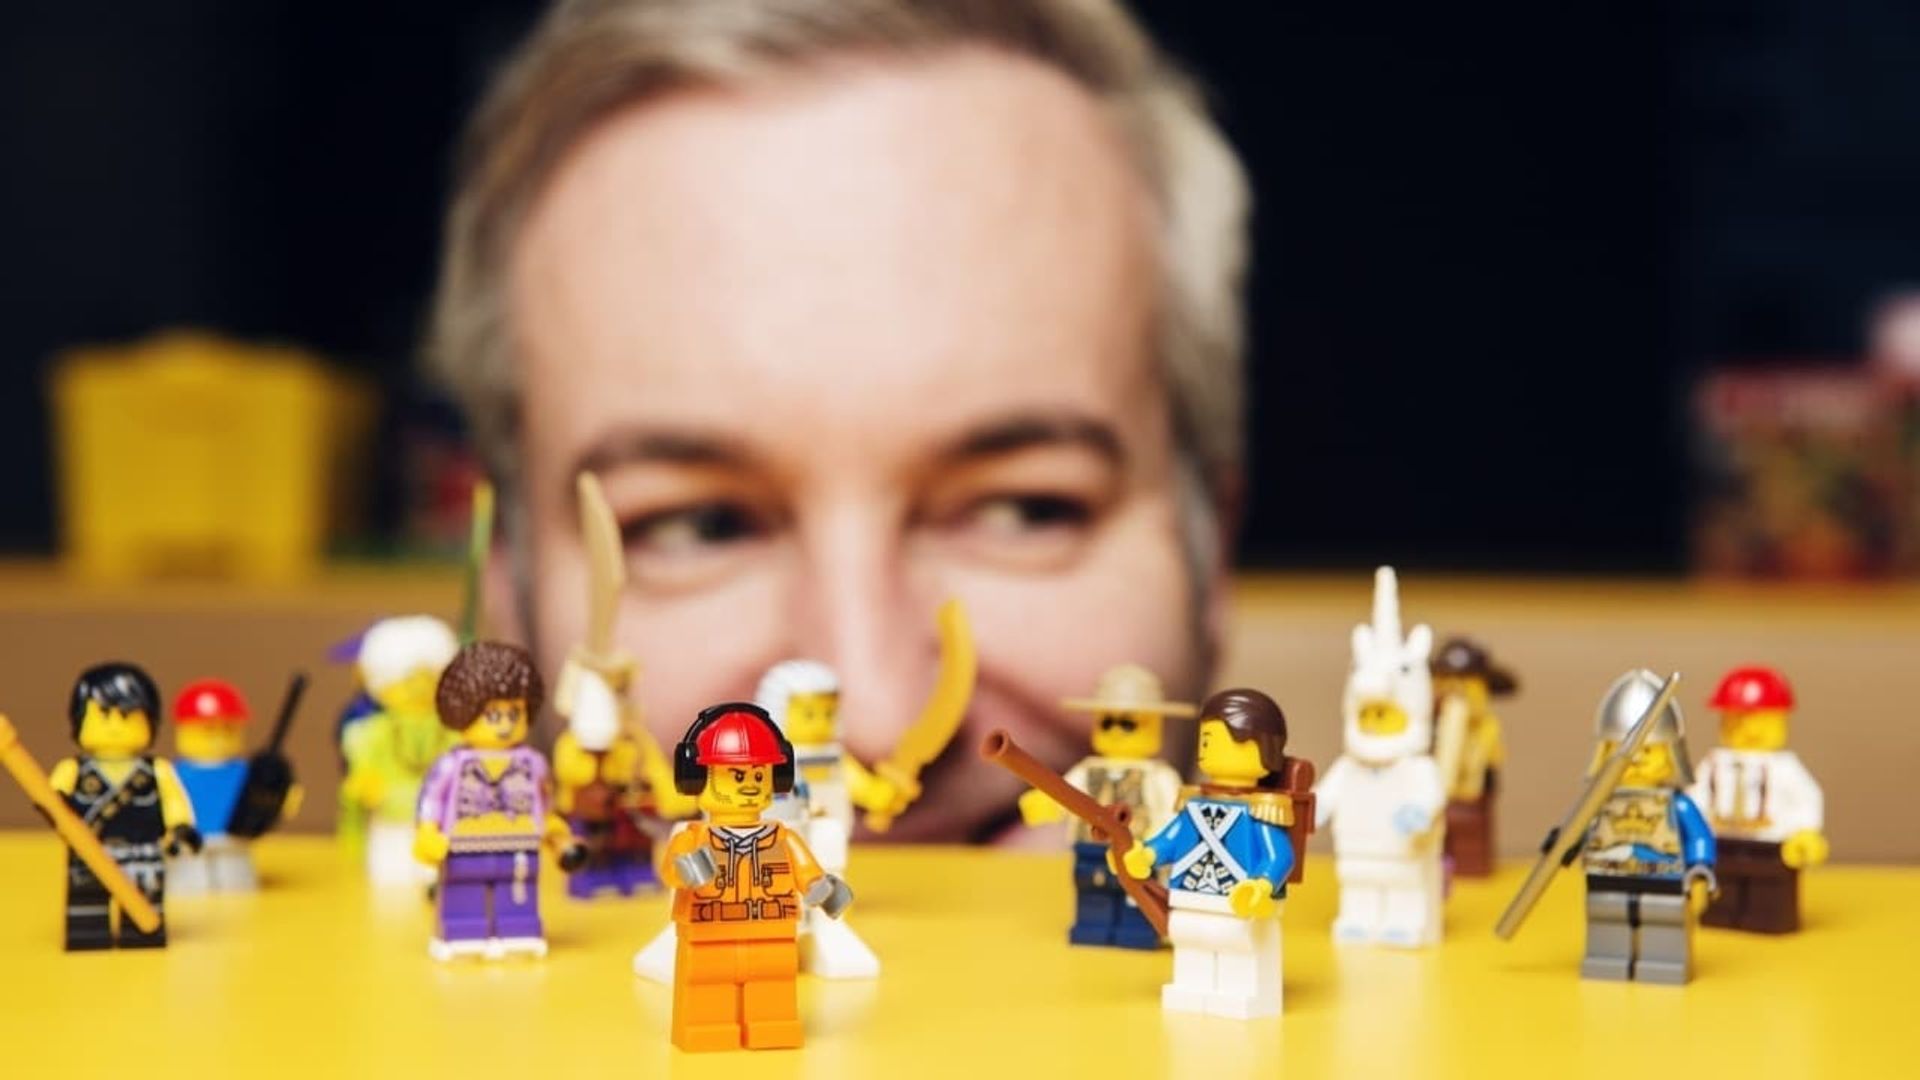 The Secret World of Lego background